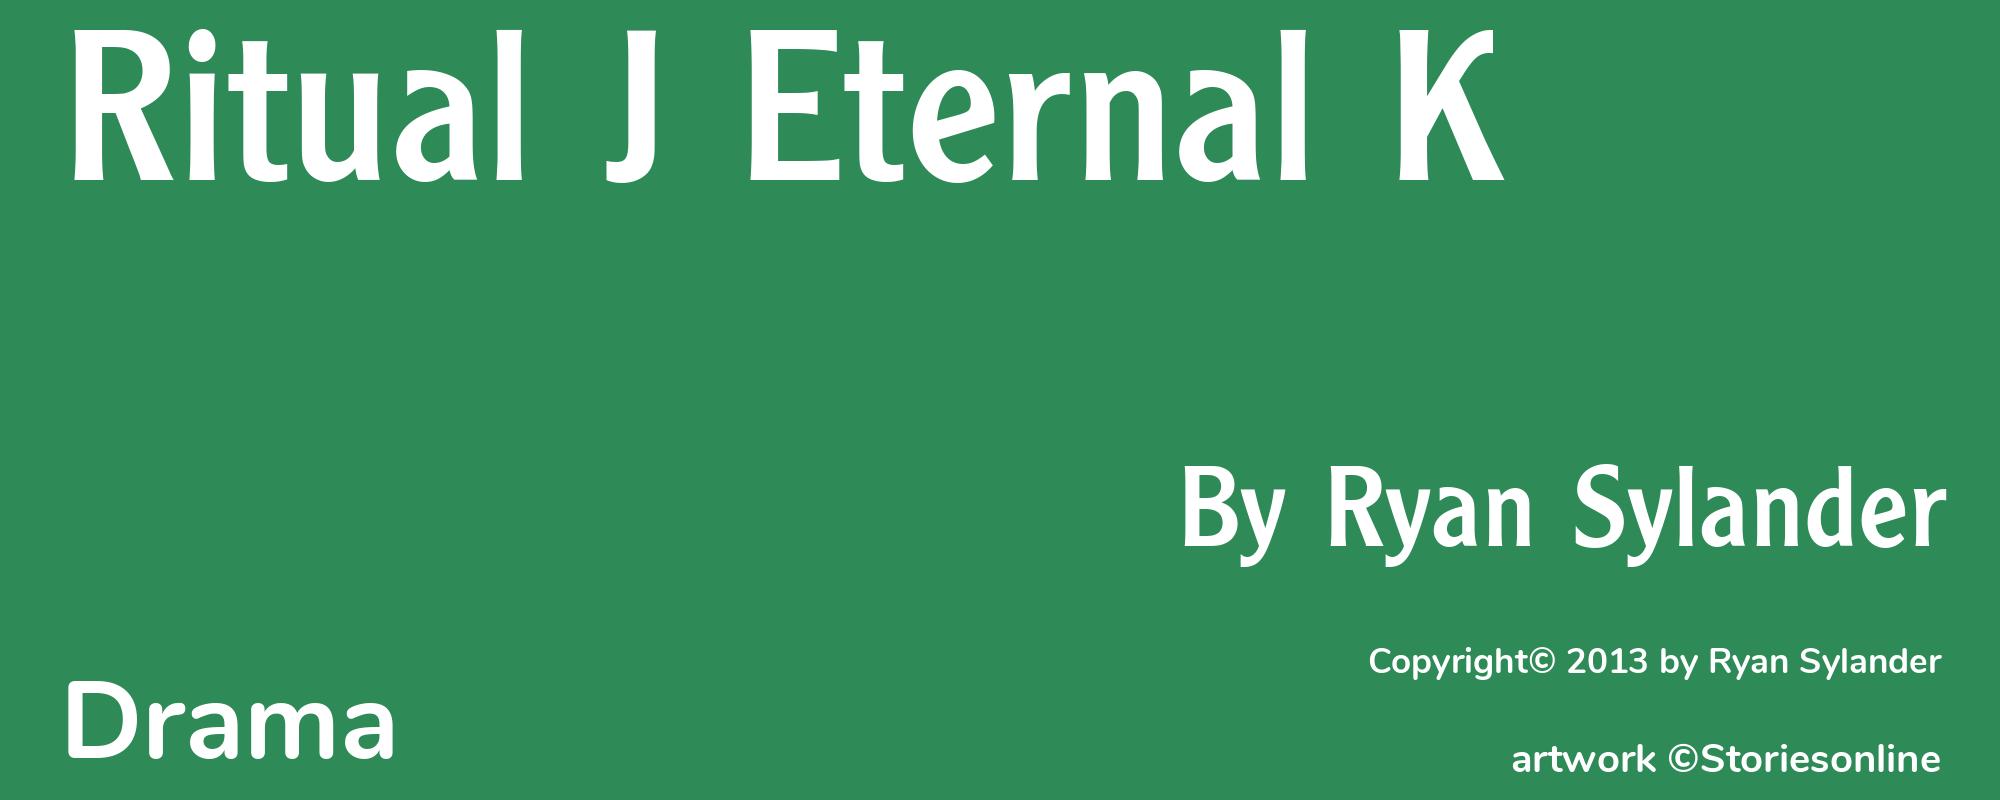 Ritual J Eternal K - Cover